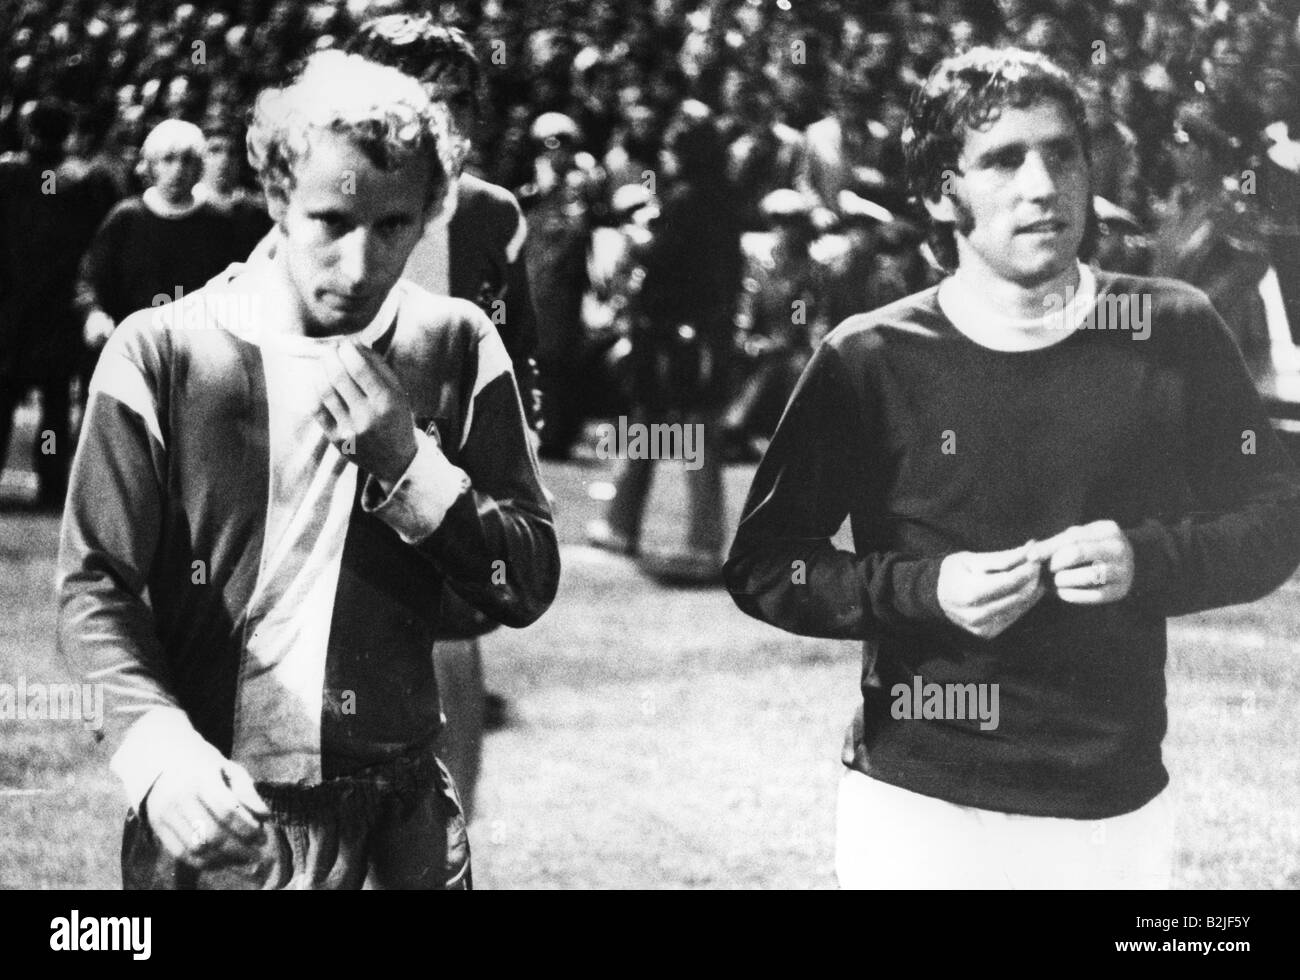 Palla, Alan, 12.5.1945 - 24.4.2007, atleta britannico (calcio), mezza lunghezza, con Berti Vogts, dopo la partita Borussia Mönchengladbach contro FC Everton, 3.11.1970, Foto Stock